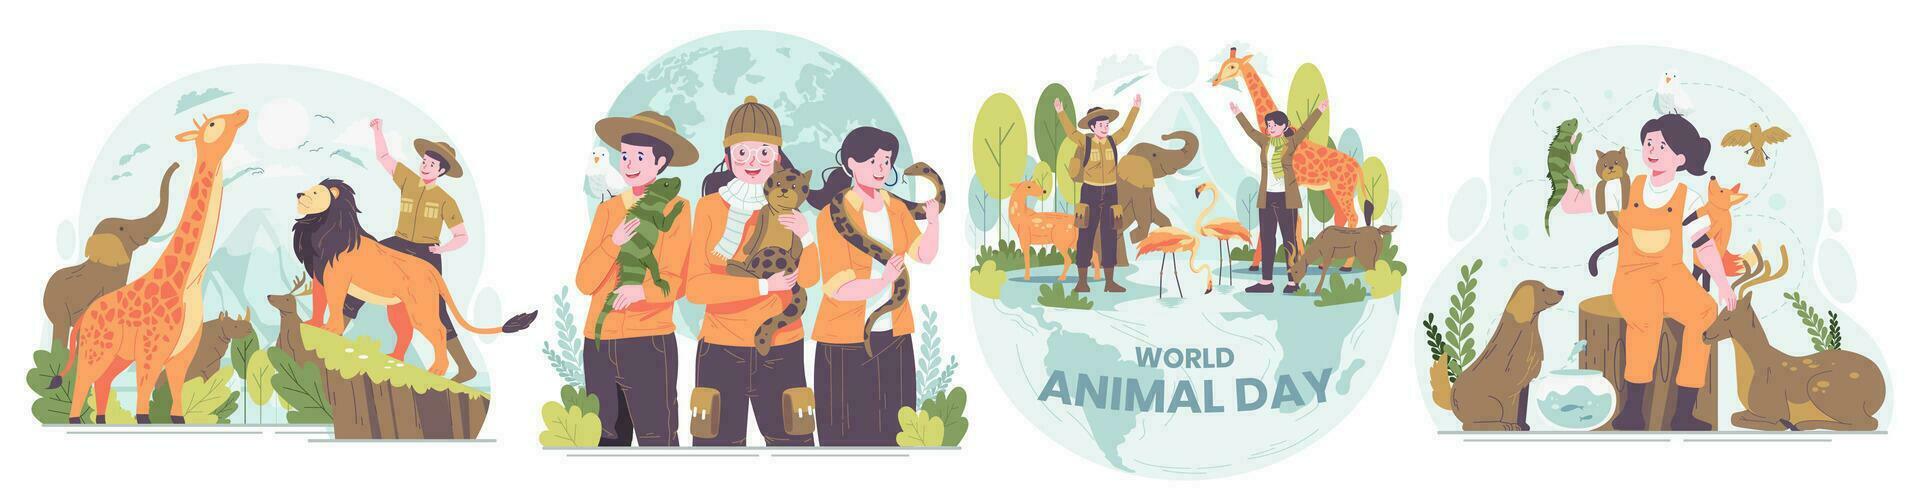 Illustration einstellen von Welt Tier Tag, Tierwelt Tag, Tiere auf das Planet, Tiere um das Welt vektor